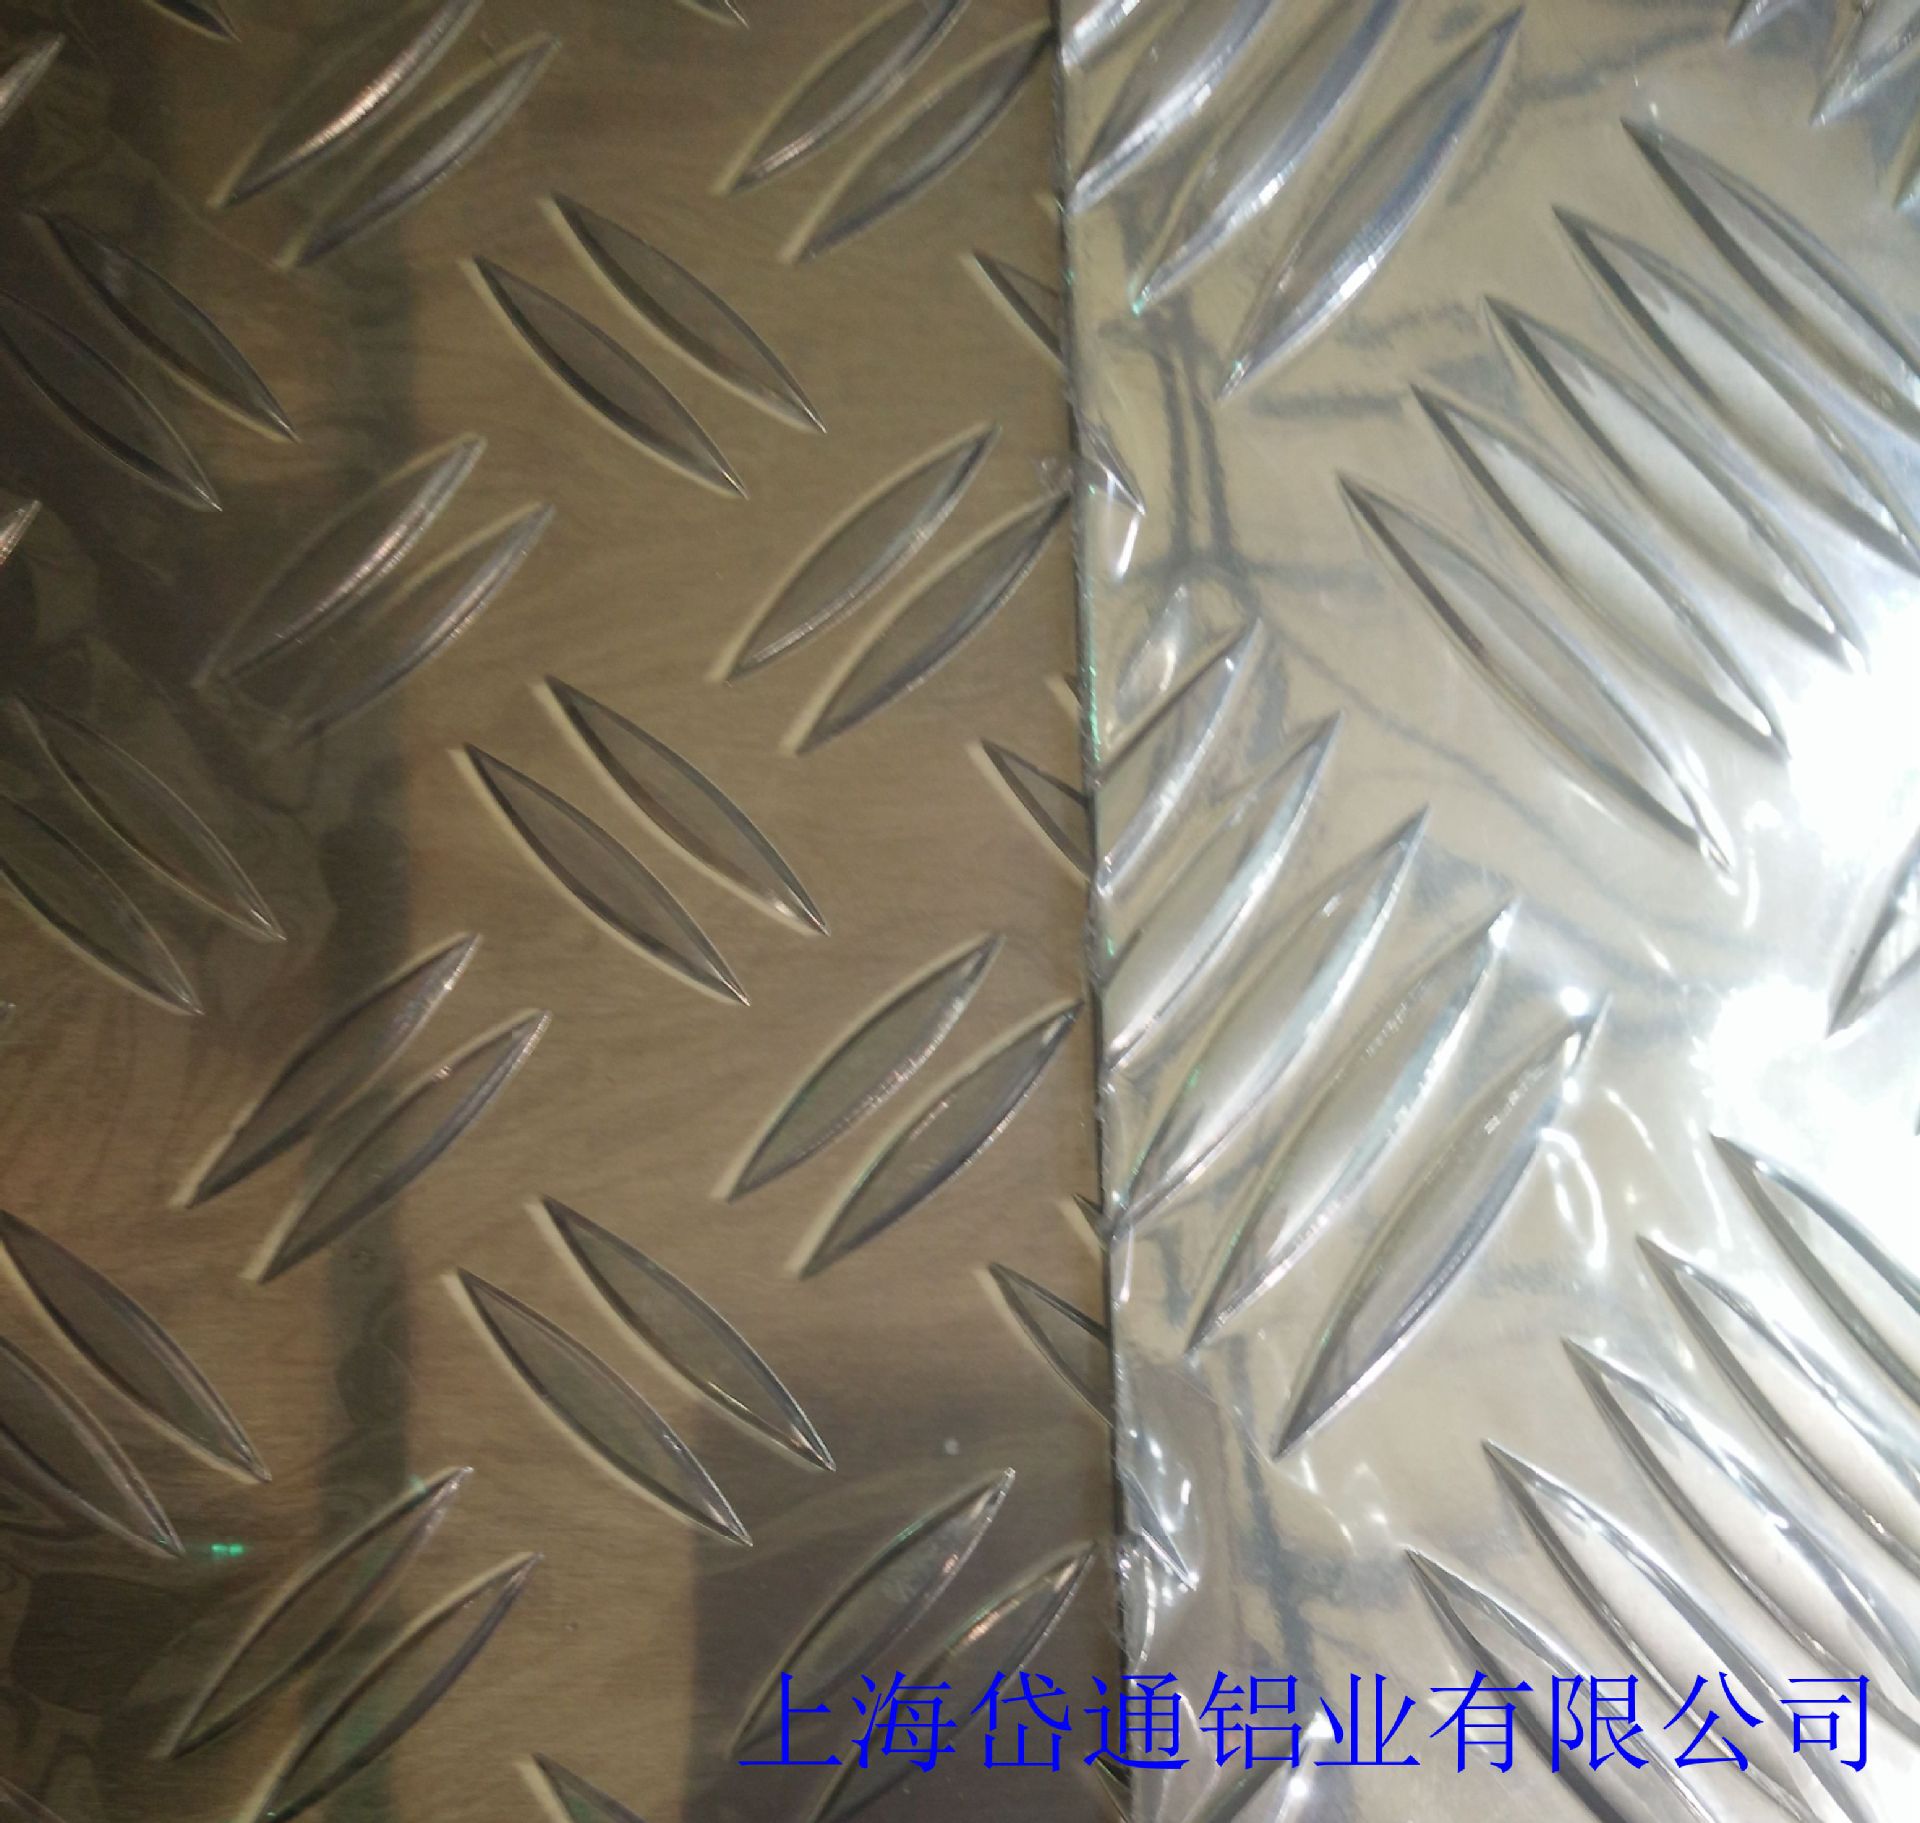 6.18合金花纹防滑板 防腐蚀条纹 防滑合金板价格通用 铝材示例图9